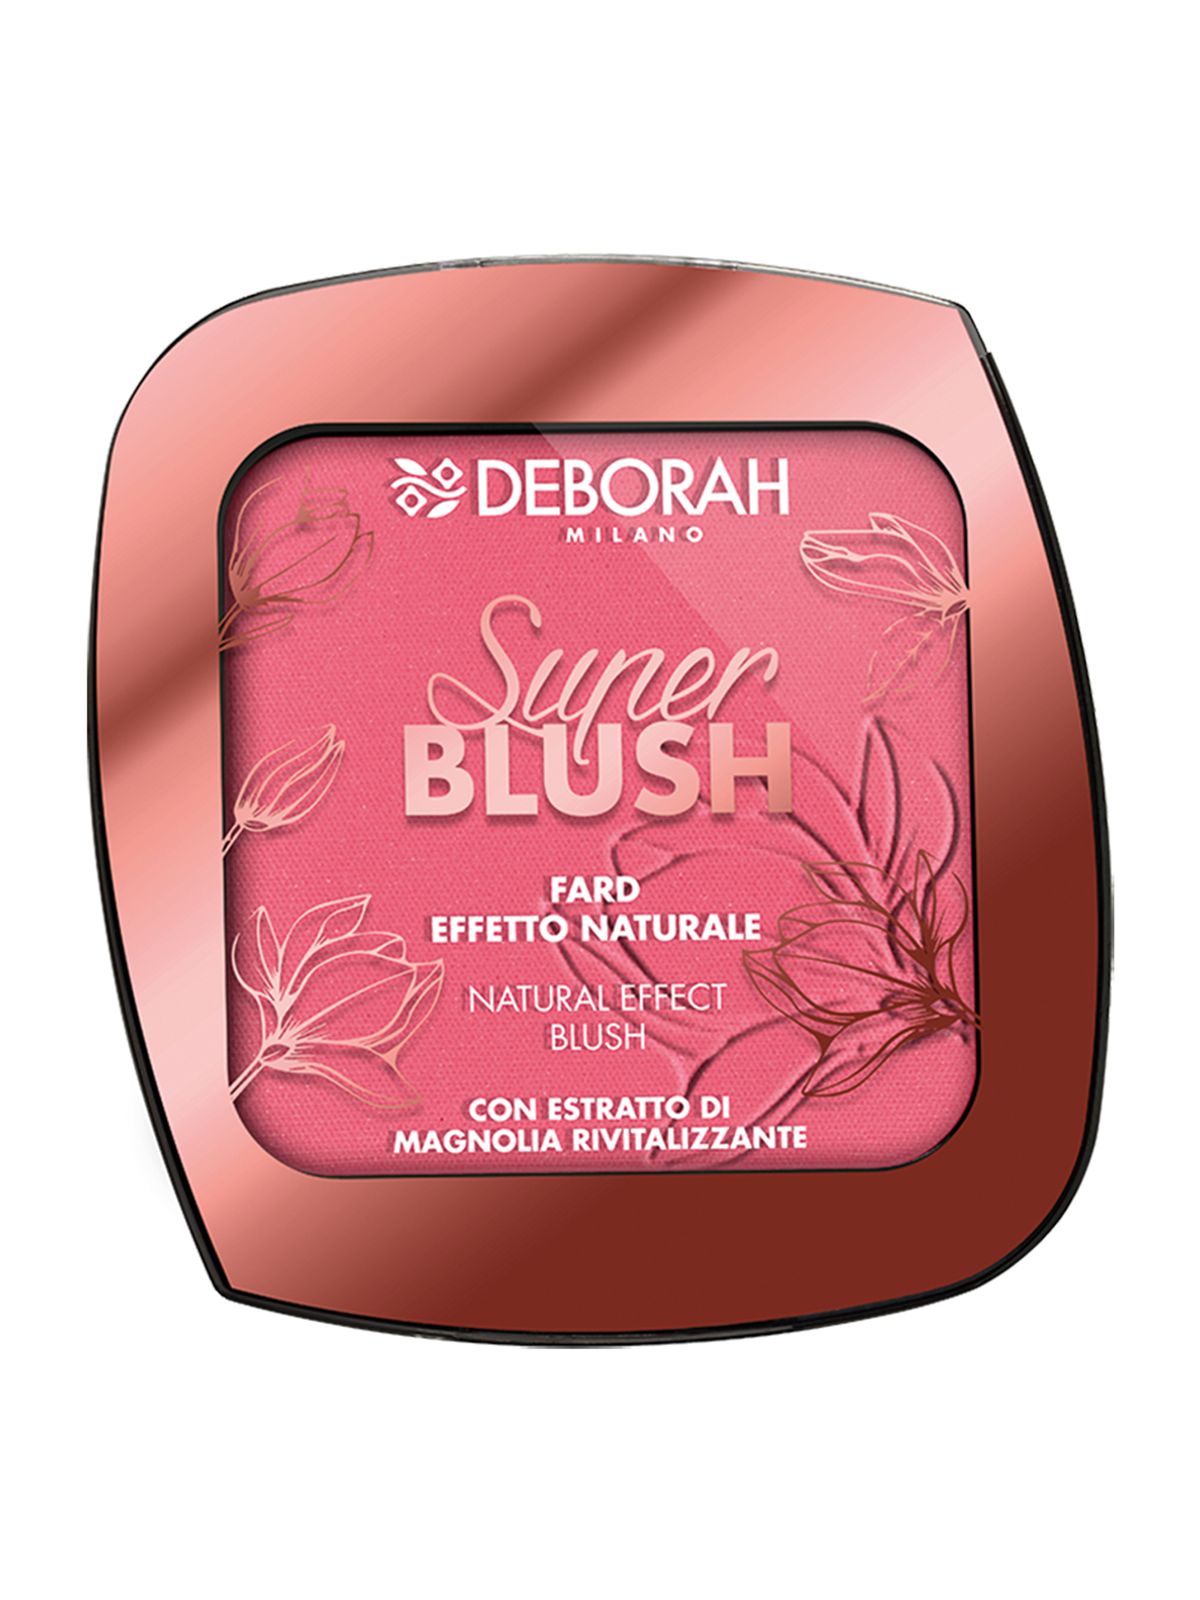 Румяна  3 Кирпично-розовый  Deborah Milano Super Blush румяна 3 кирпично розовый deborah milano super blush